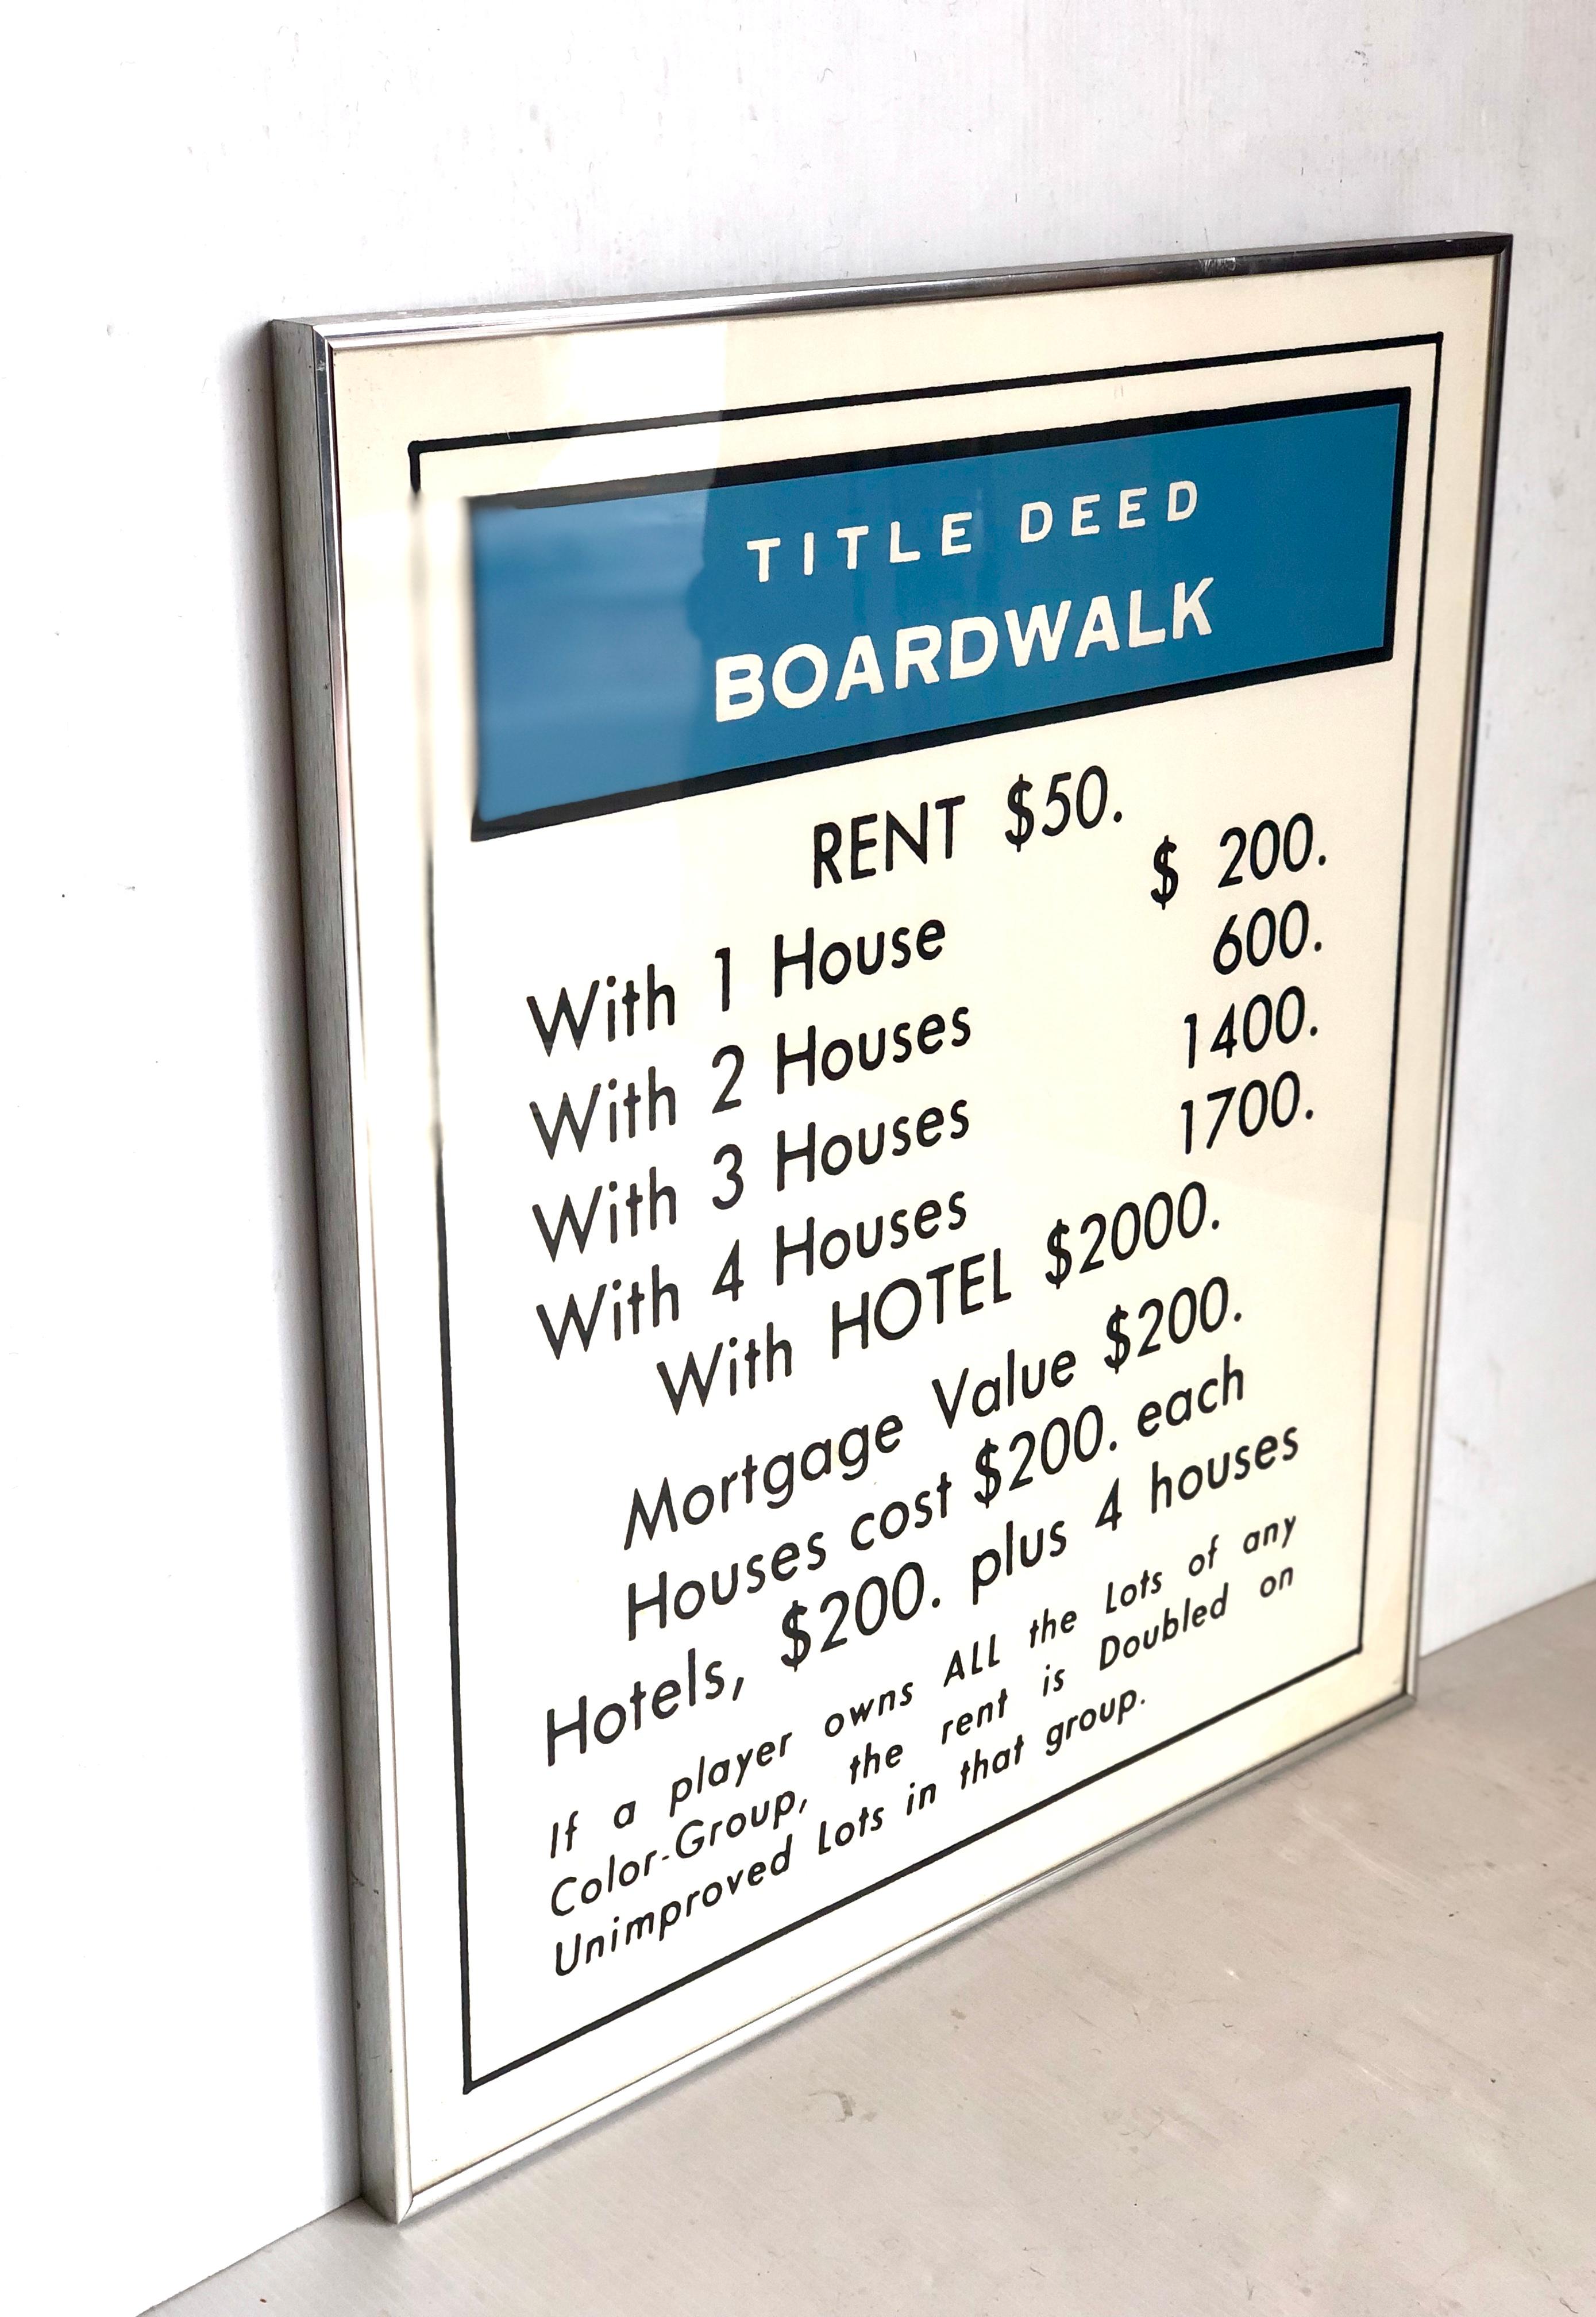 boardwalk monopoly card